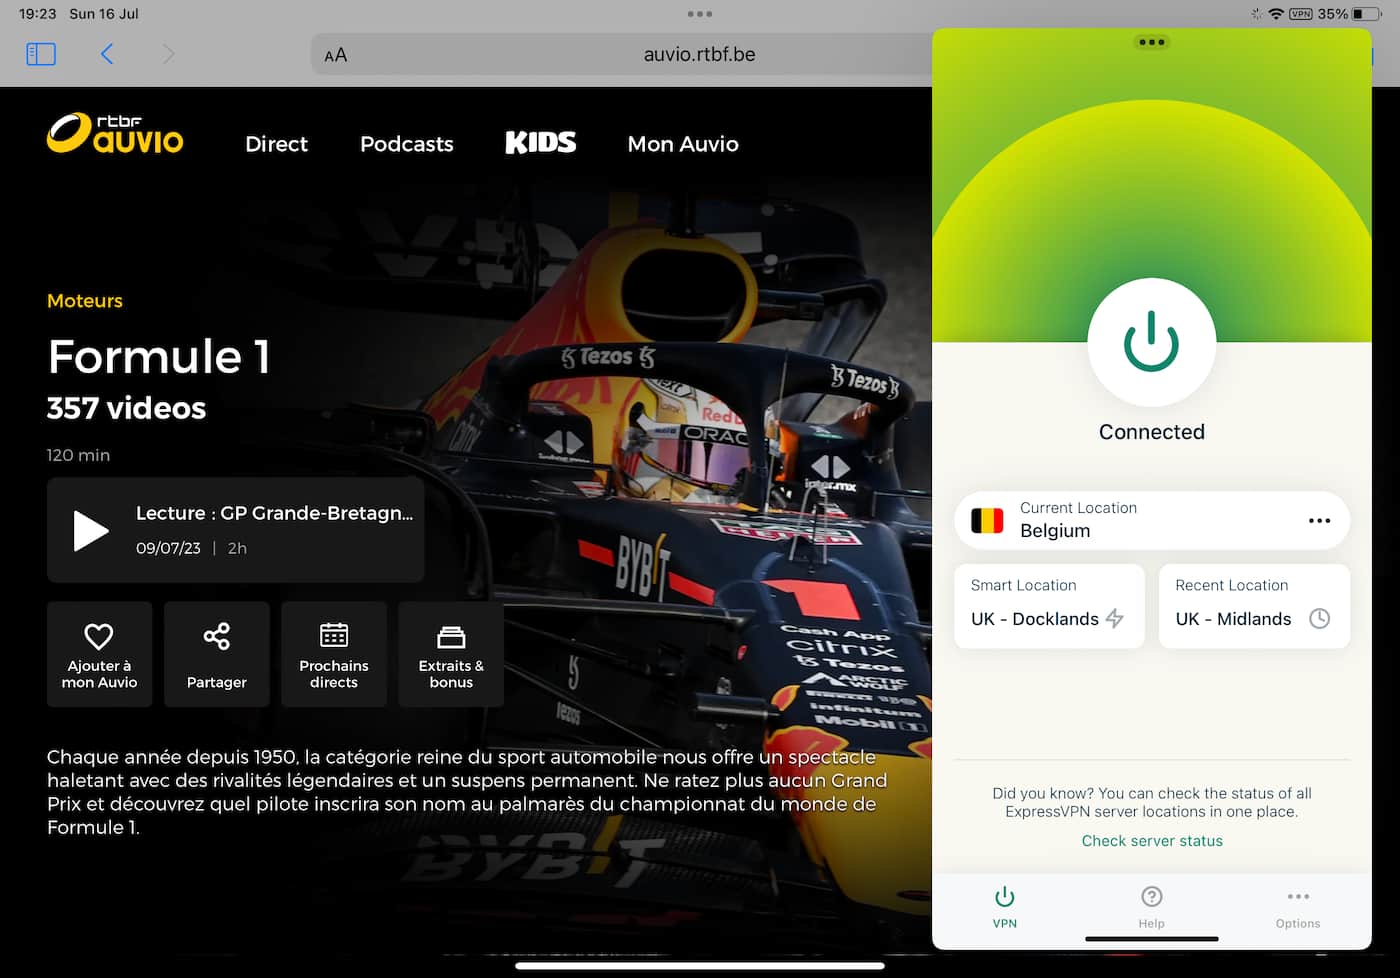 Streaming gratuito de F1 en iOS a través del sitio web de RTBF Auvio